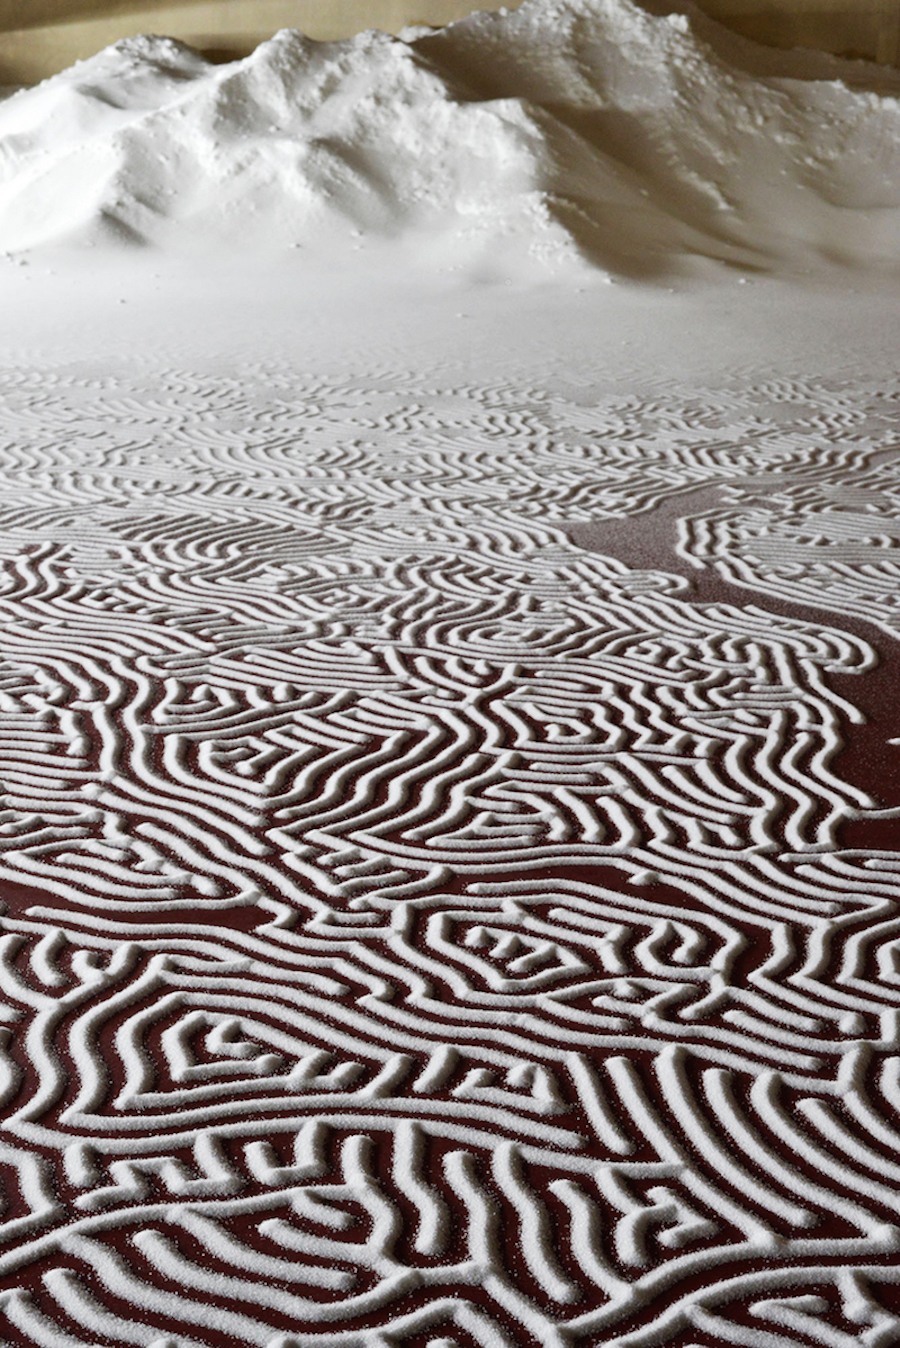 Meticulous Salt Labyrinth by Motoï Yamamoto8